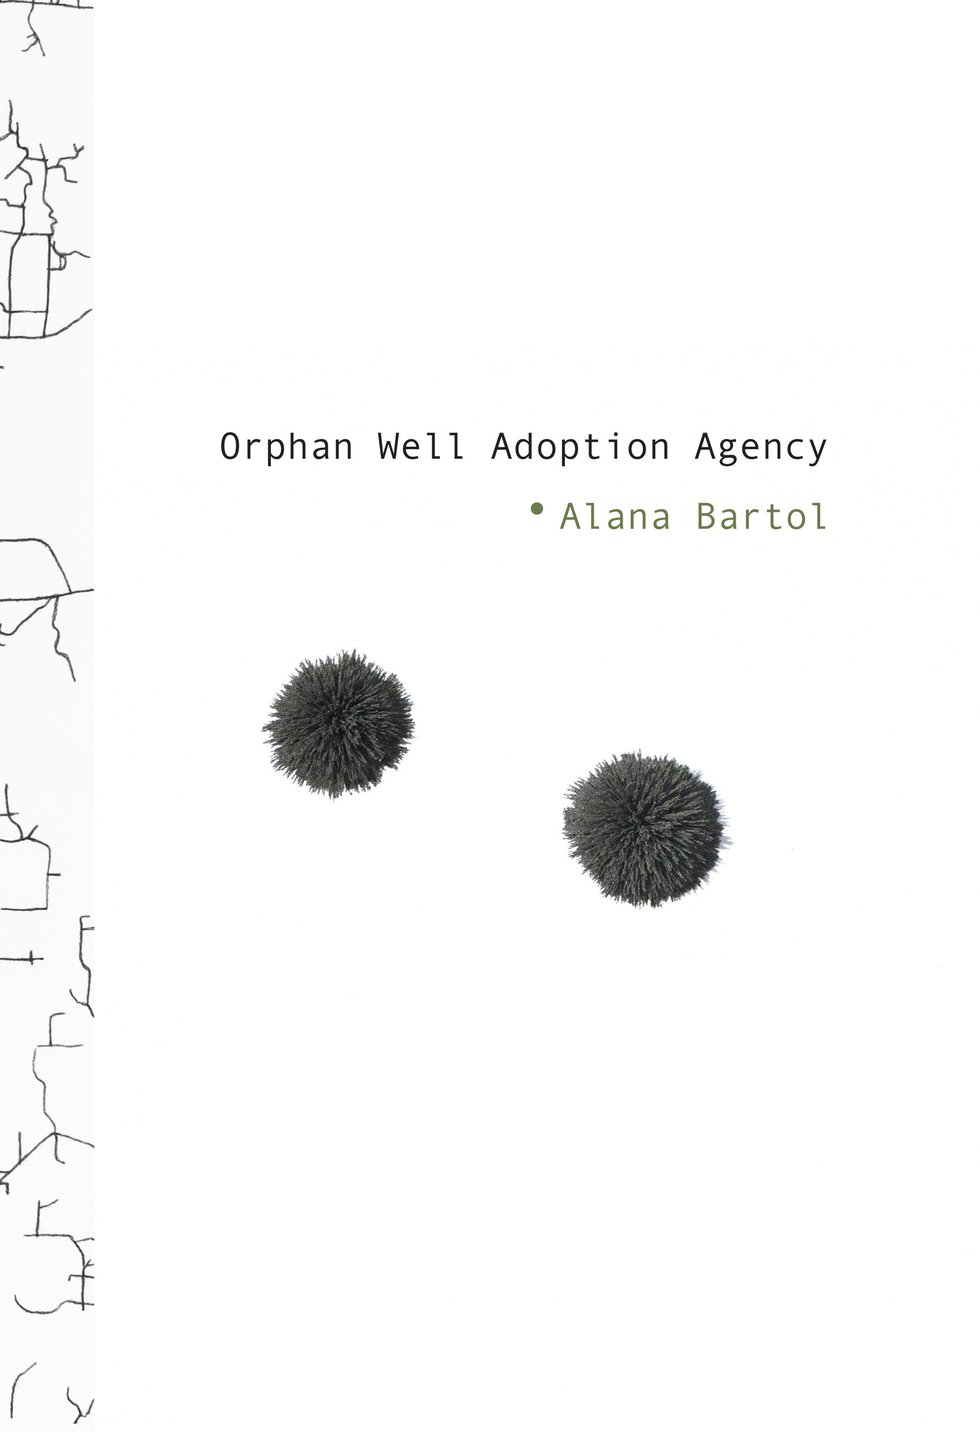 orphan.jpg